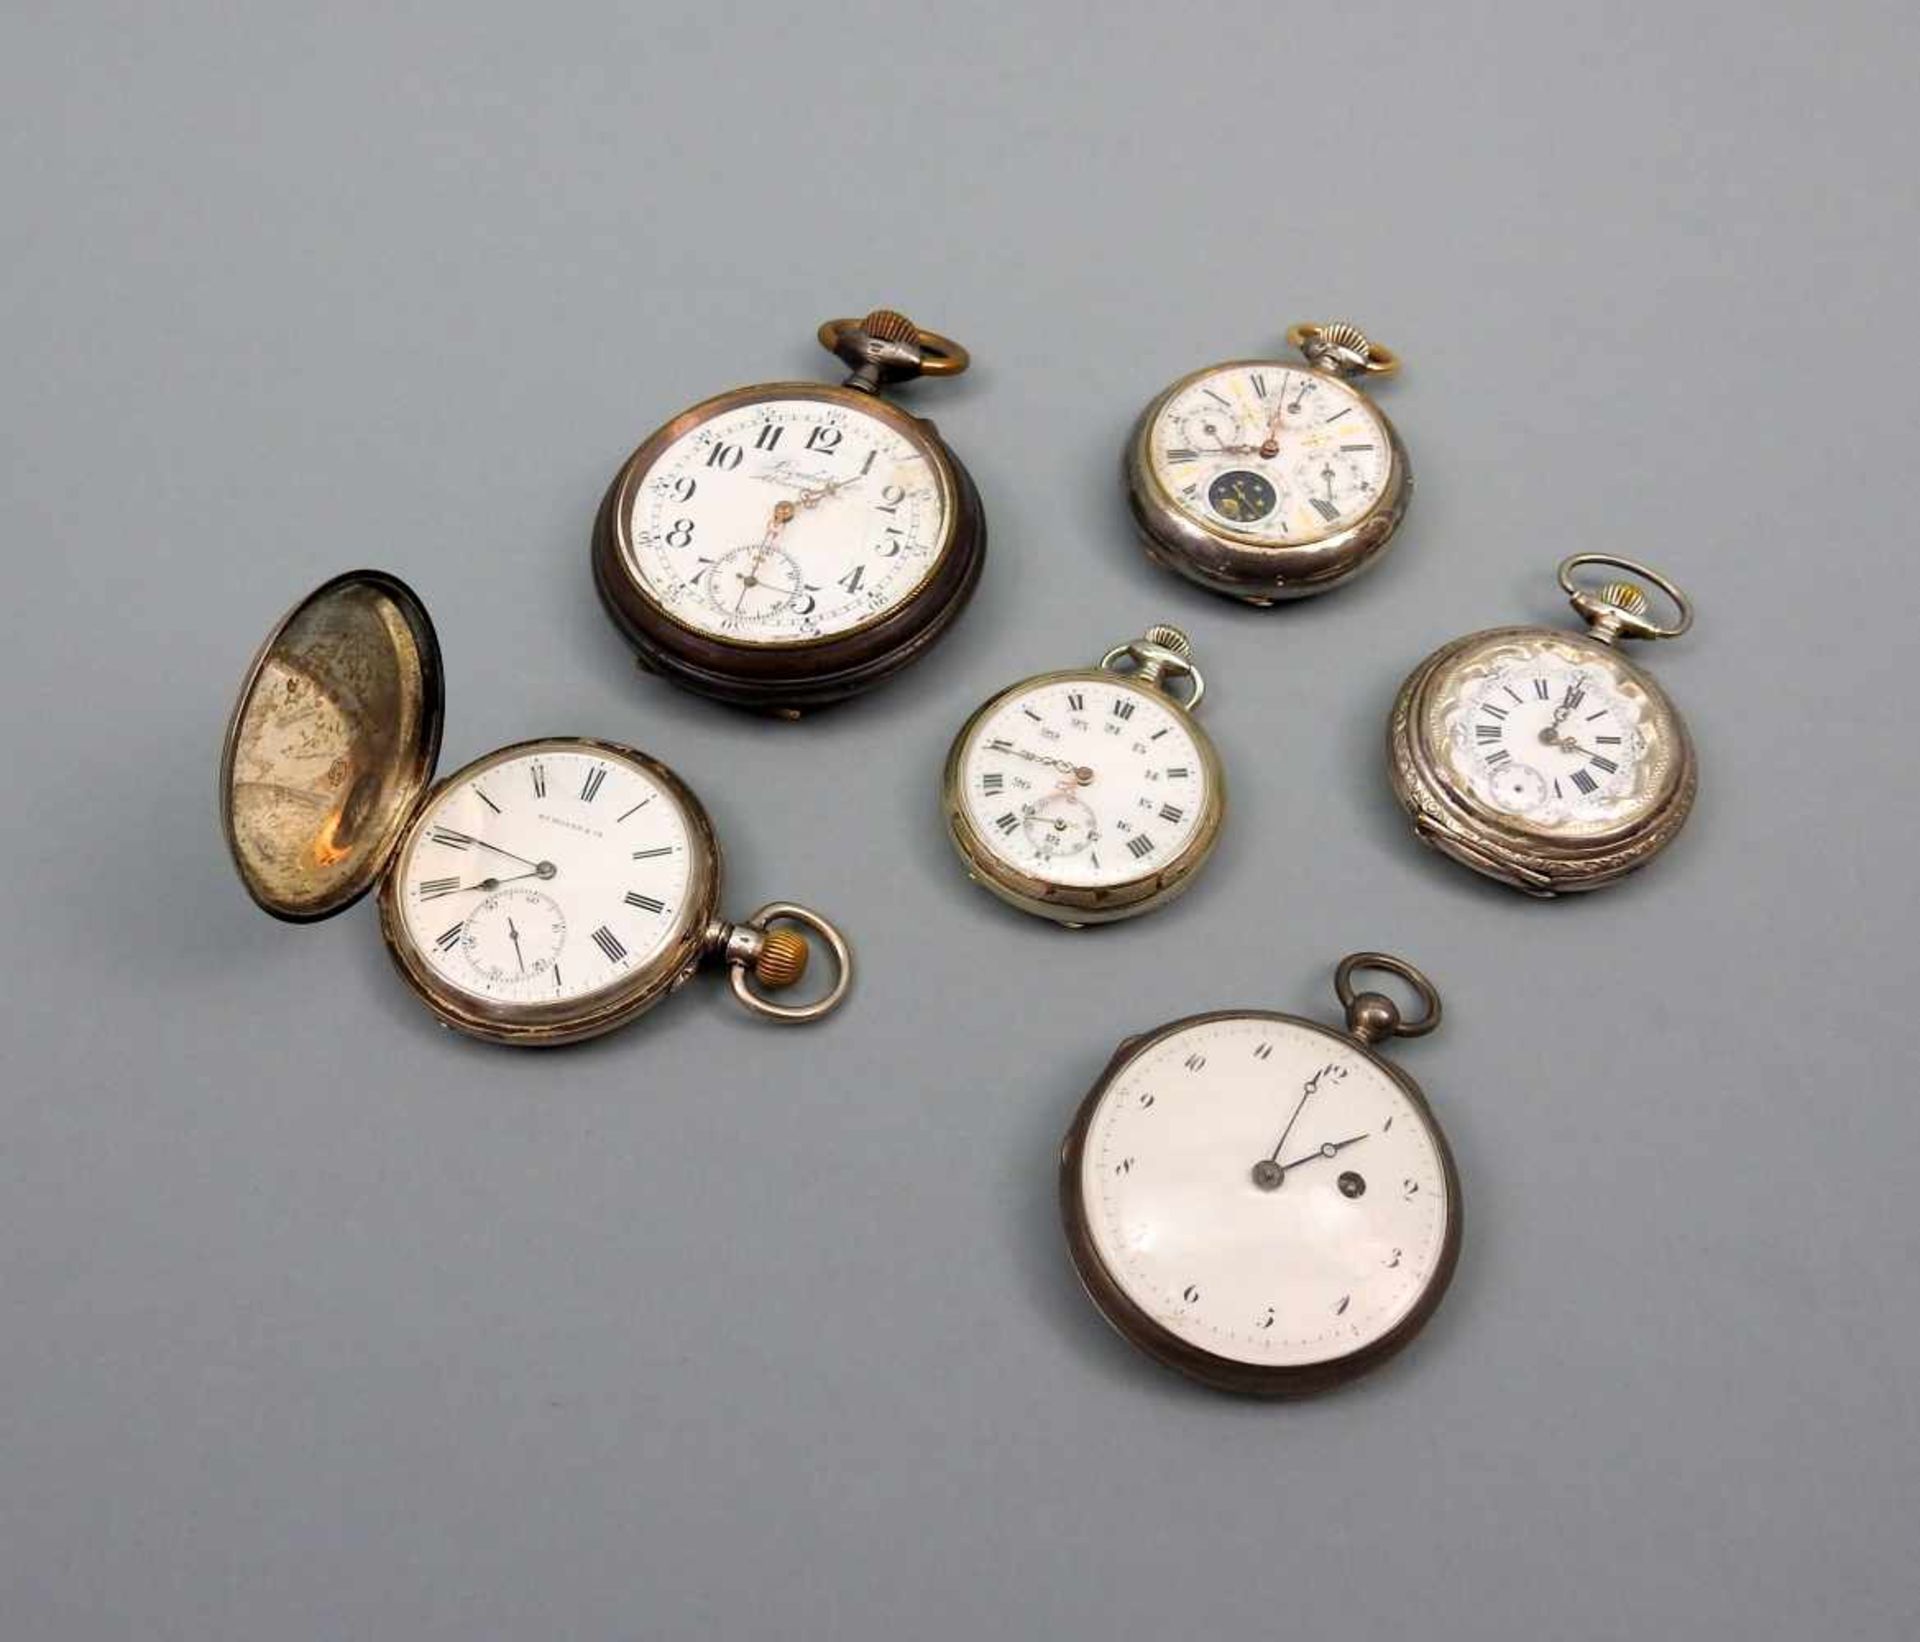 Konvolut von TaschenuhrenSilber und Metall, das Konvolut besteht aus 6 Taschenuhren (5